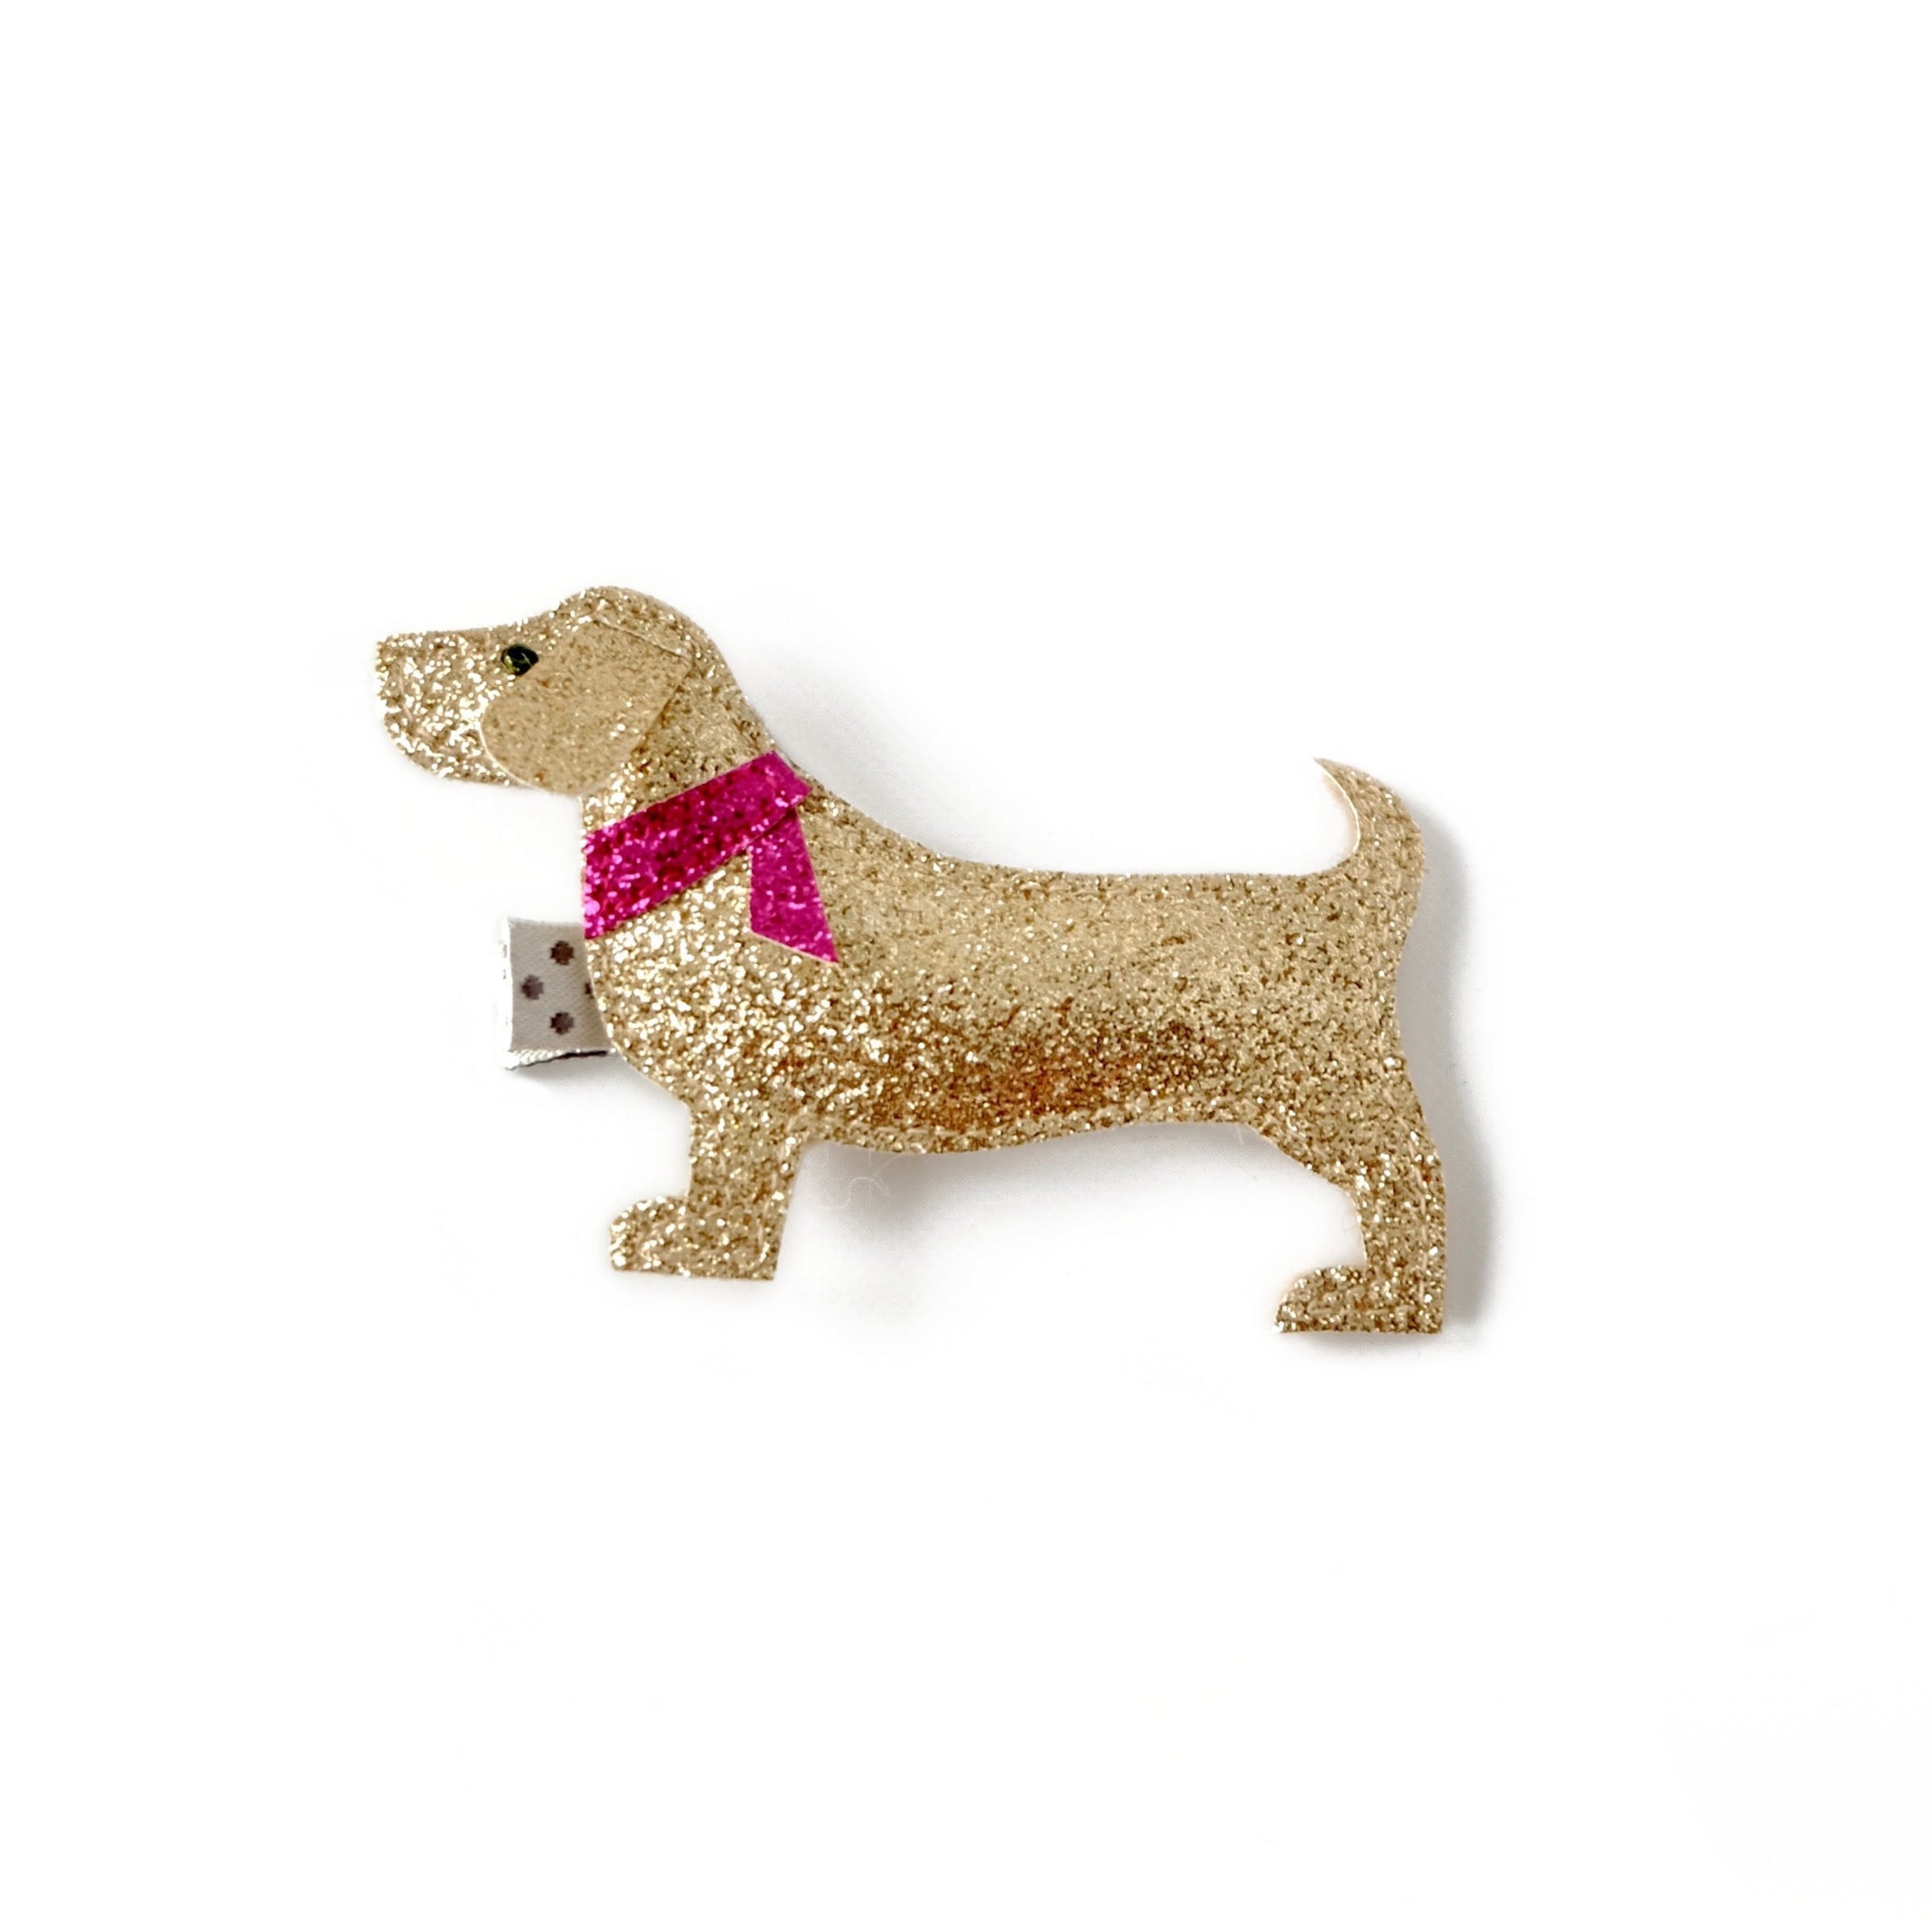 Wiener Dog with Red Necktie  Hair Clip